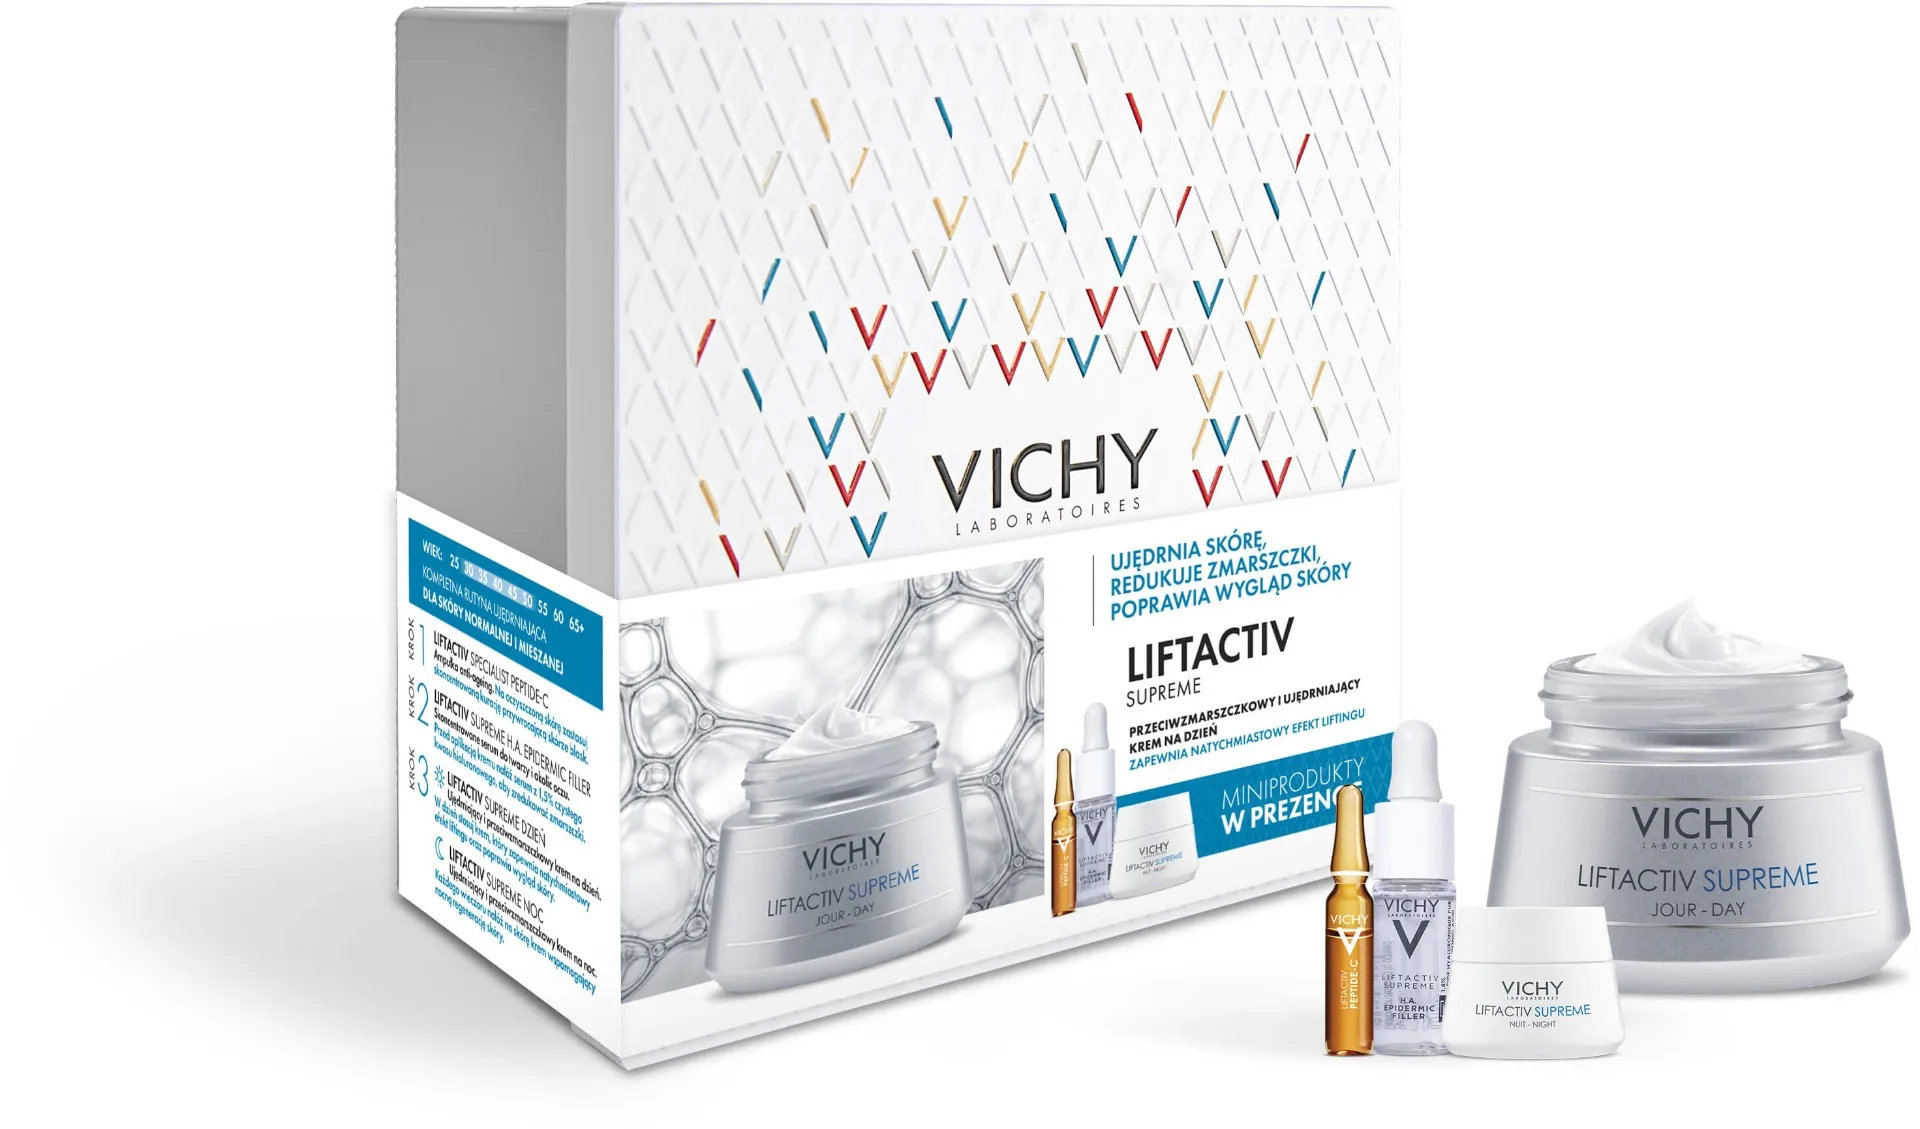 Vichy Zestaw Supreme, ujędrniający i przeciwzmarszczkowy krem na dzień, 50 ml + ampułka anti-ageing, 1,8 ml + skoncentrowane serum do twarzy i okolic oczu, 10 ml + ujędrniający i przeciwzmarszczkowy krem na noc, 15 ml